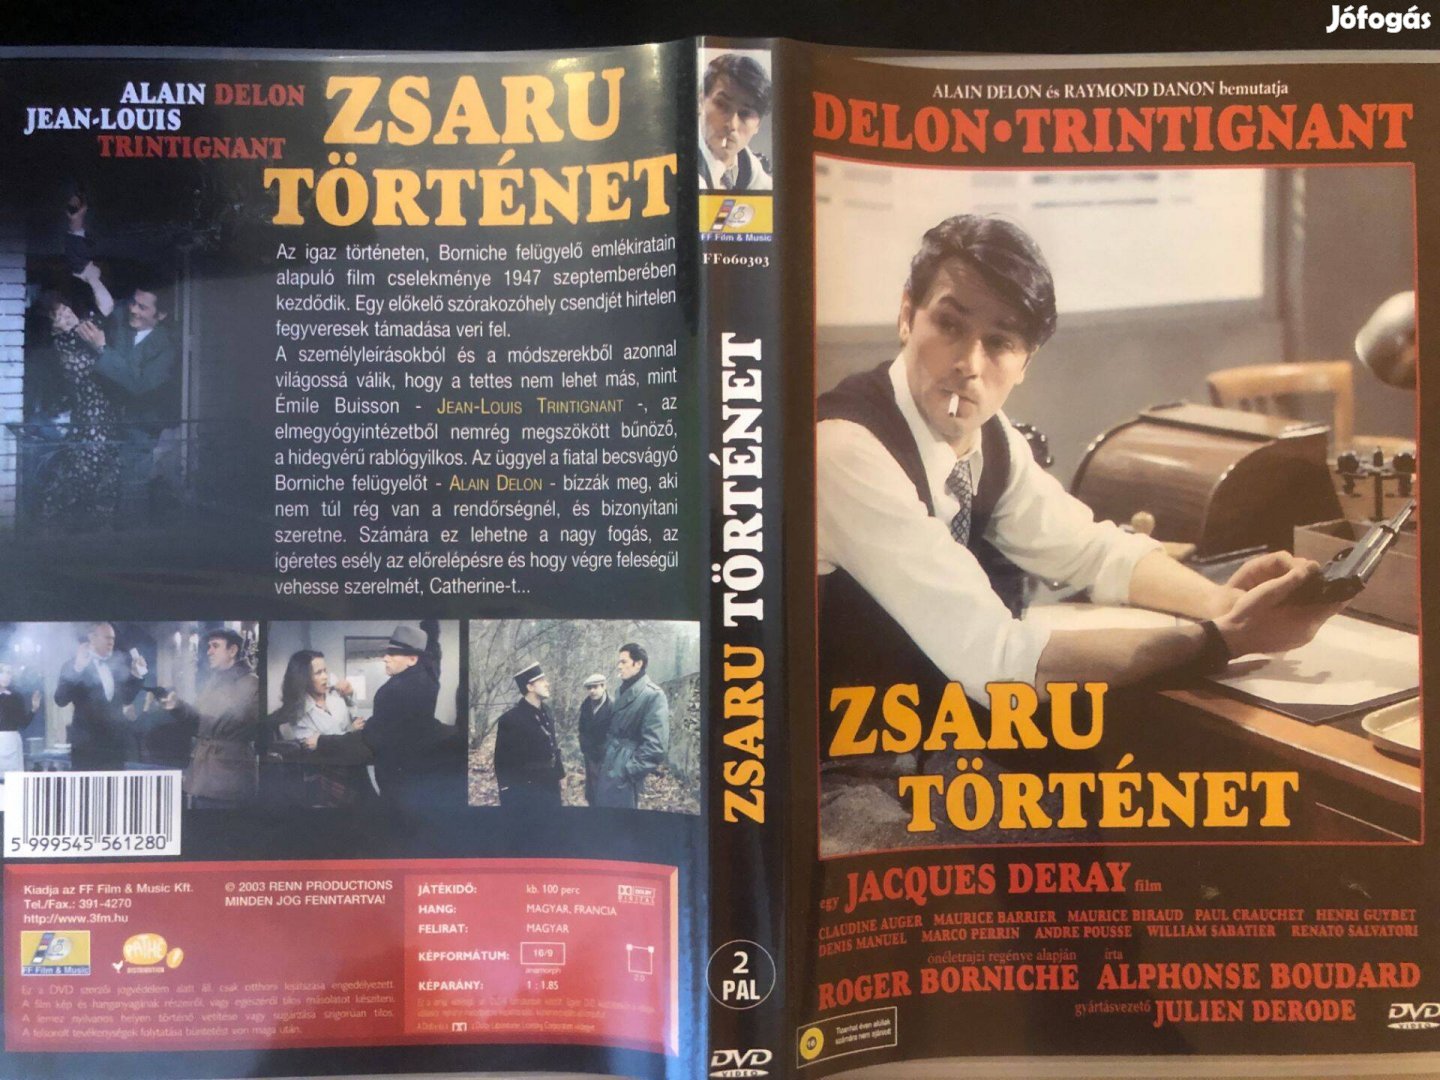 Zsaru történet (karcmentes, Alain Delon) DVD